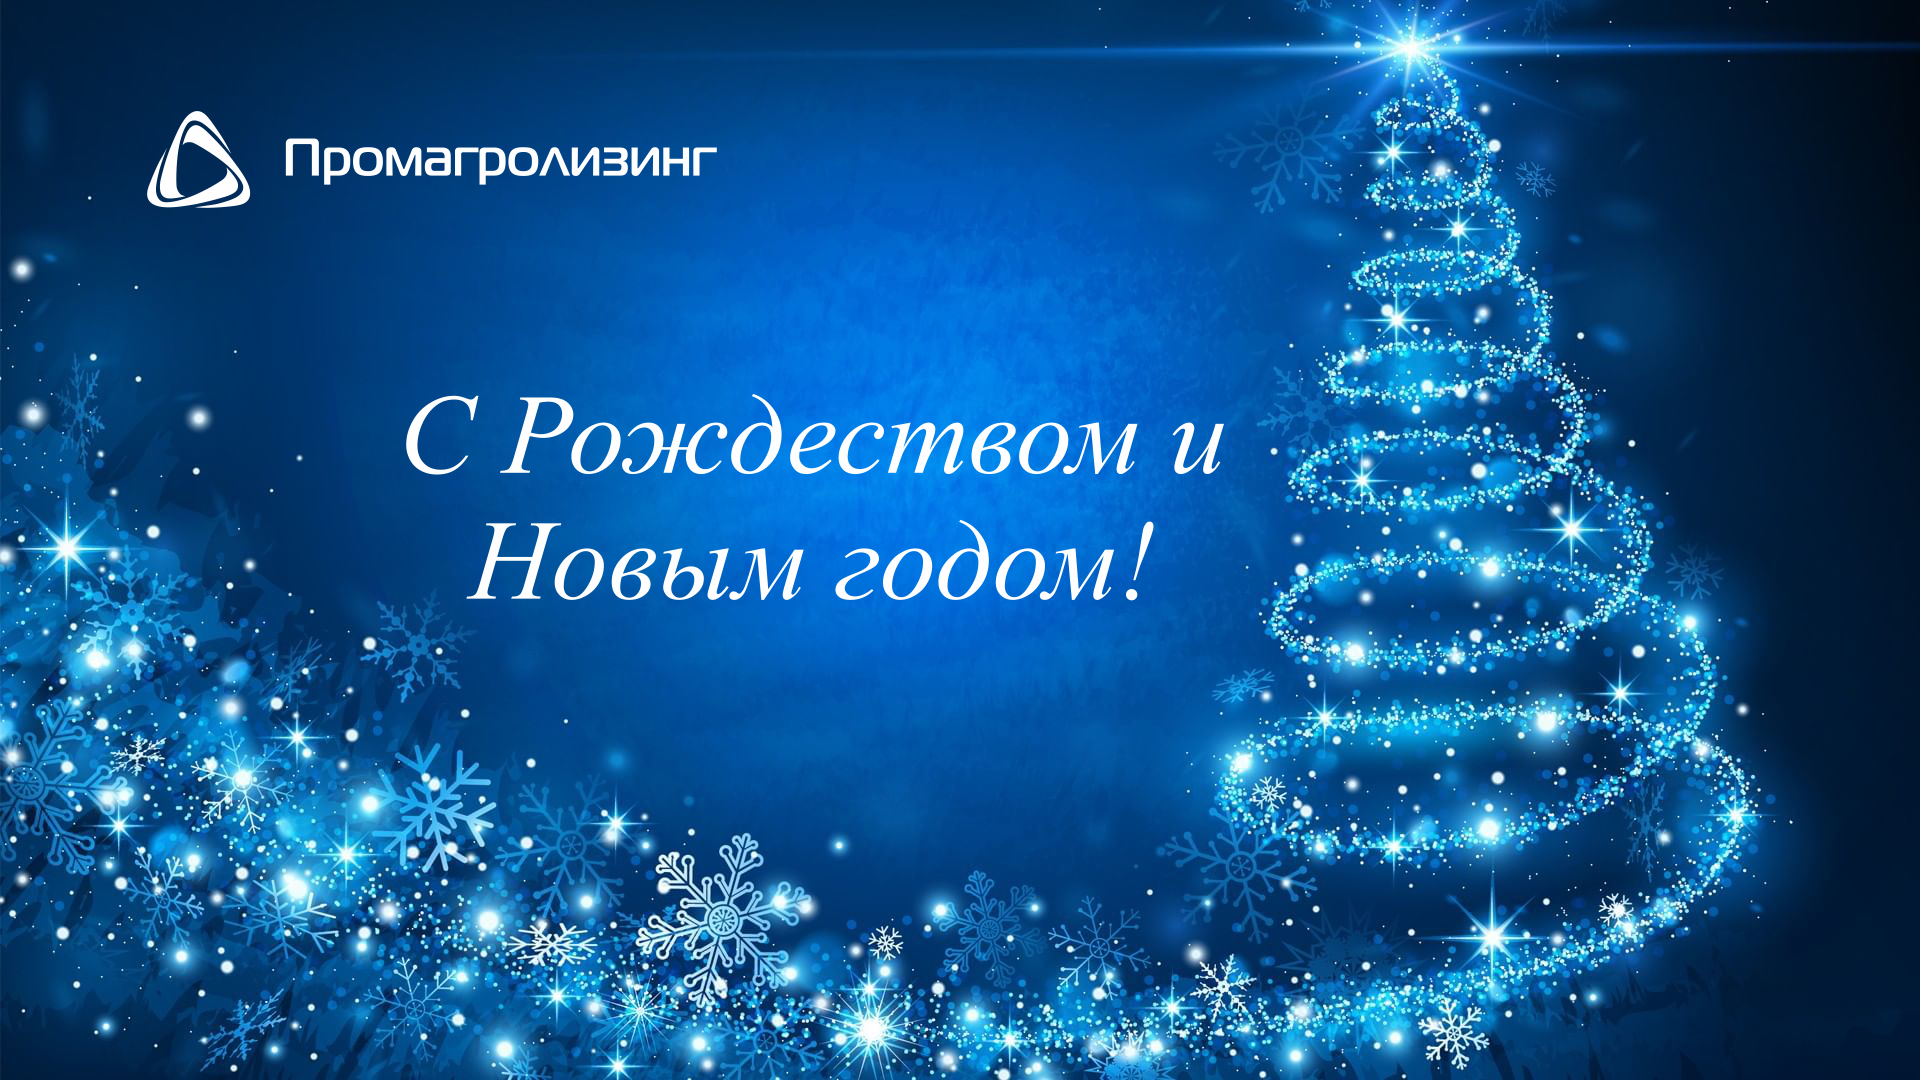 ОАО "Промагролизинг" поздравляет с Рождеством и Новым годом!